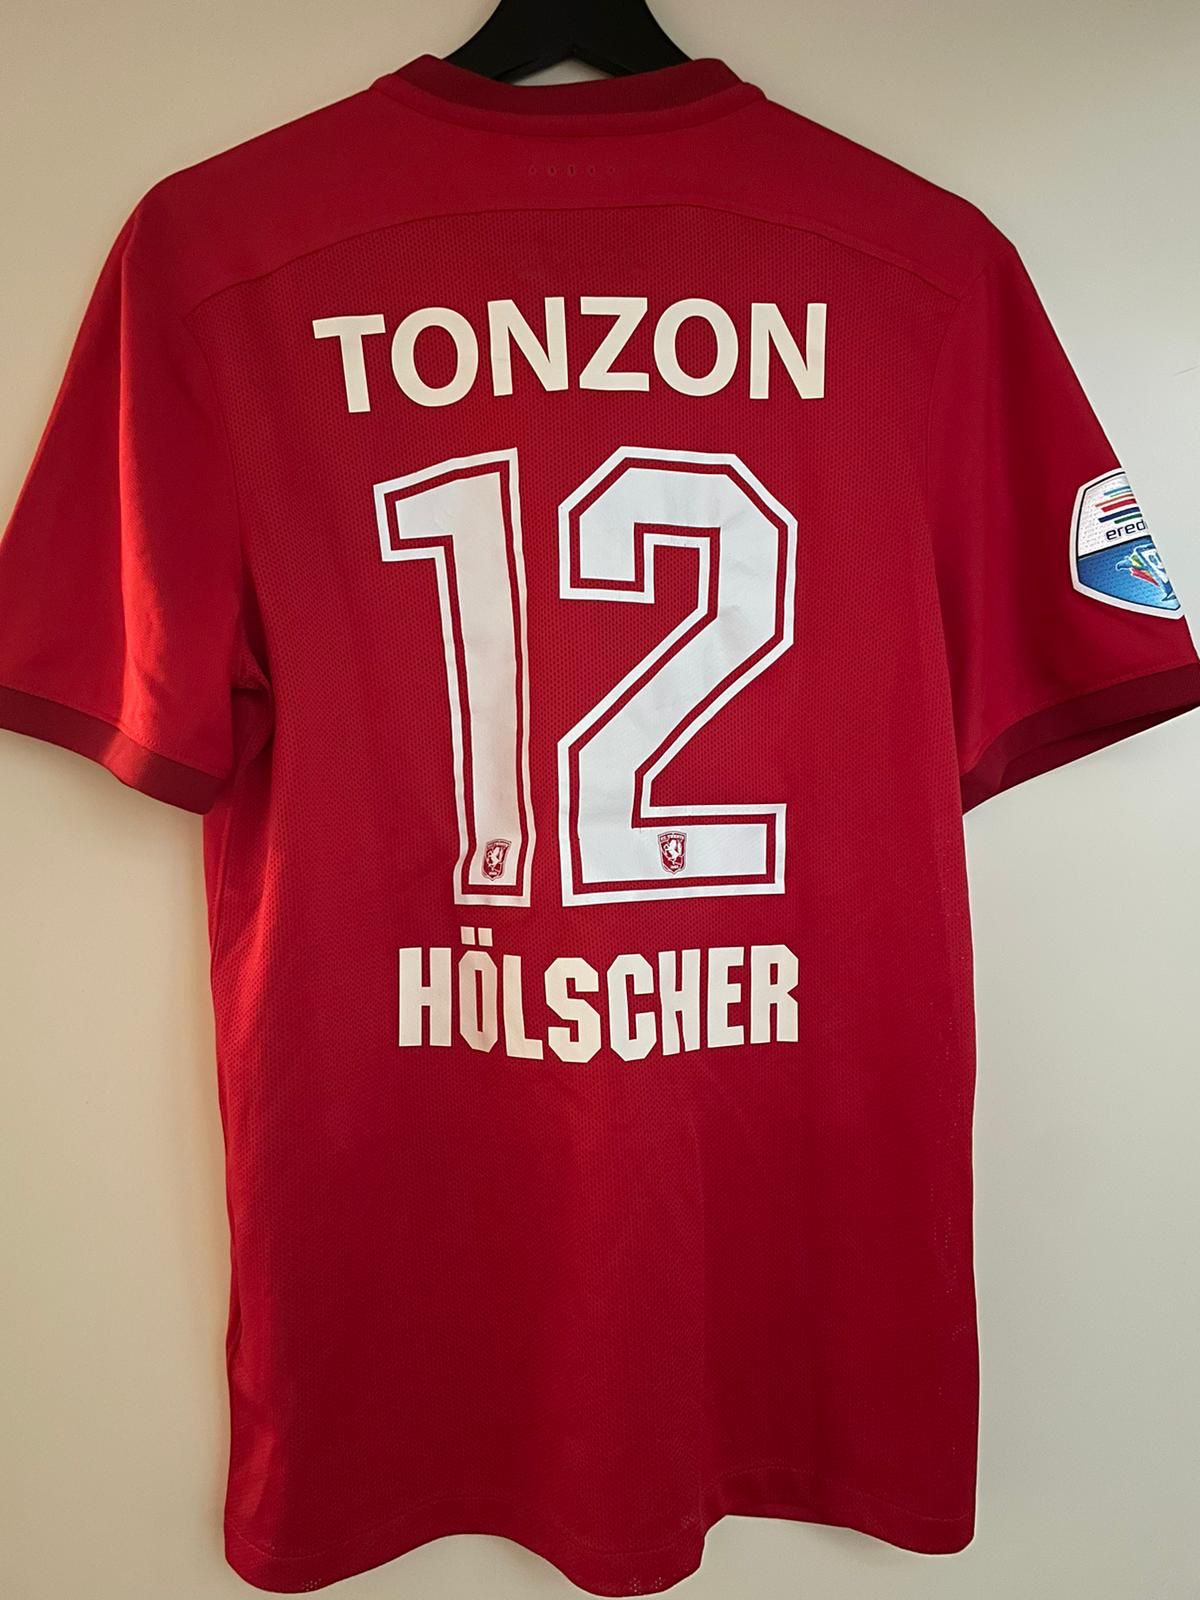 Twente: Tim Hölscher